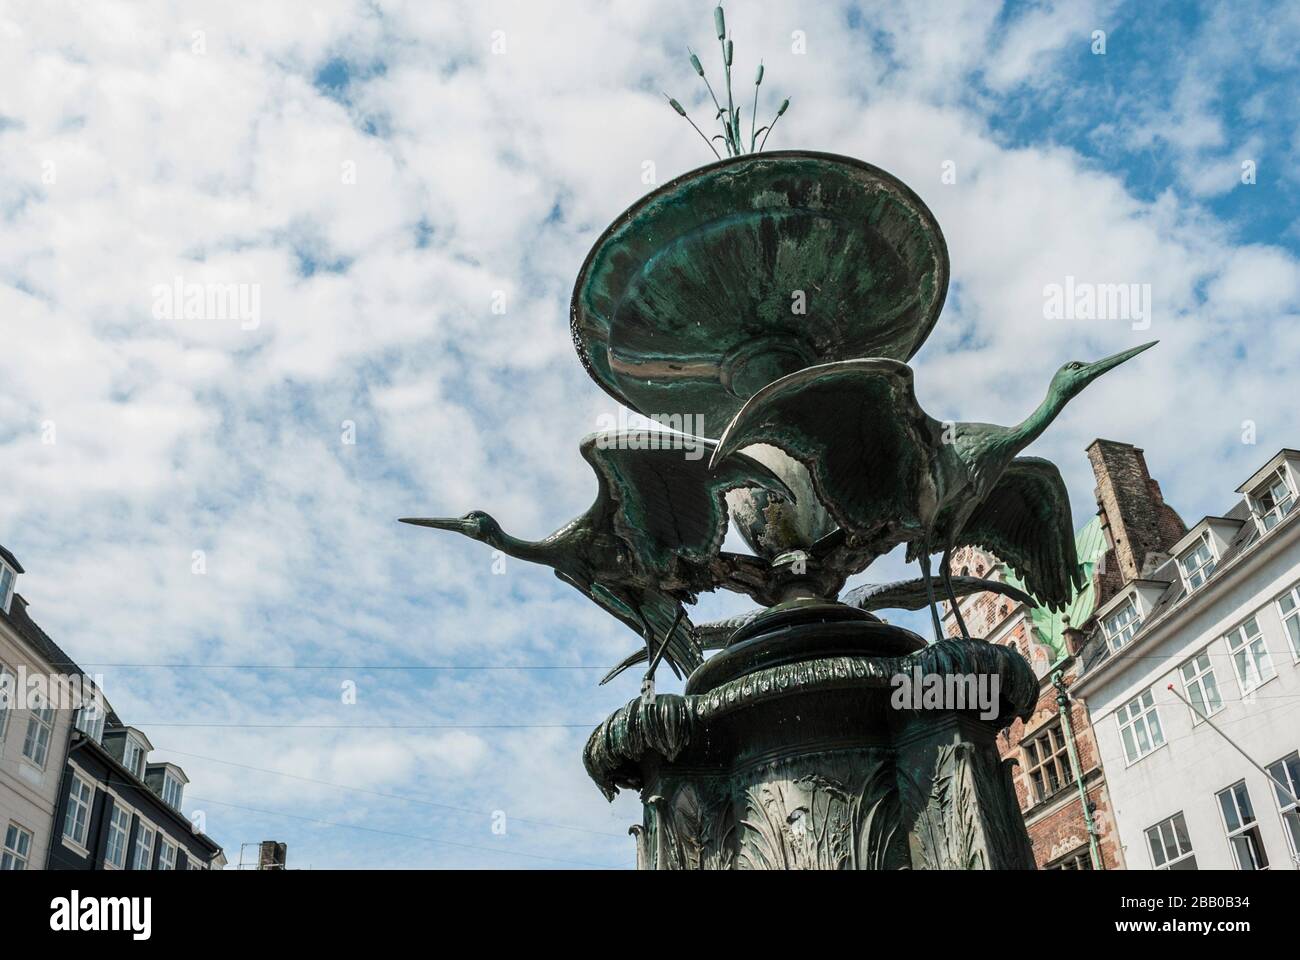 Stork Fountain, Amager Square, Copenhagen, Denmark, Europe. Stock Photo